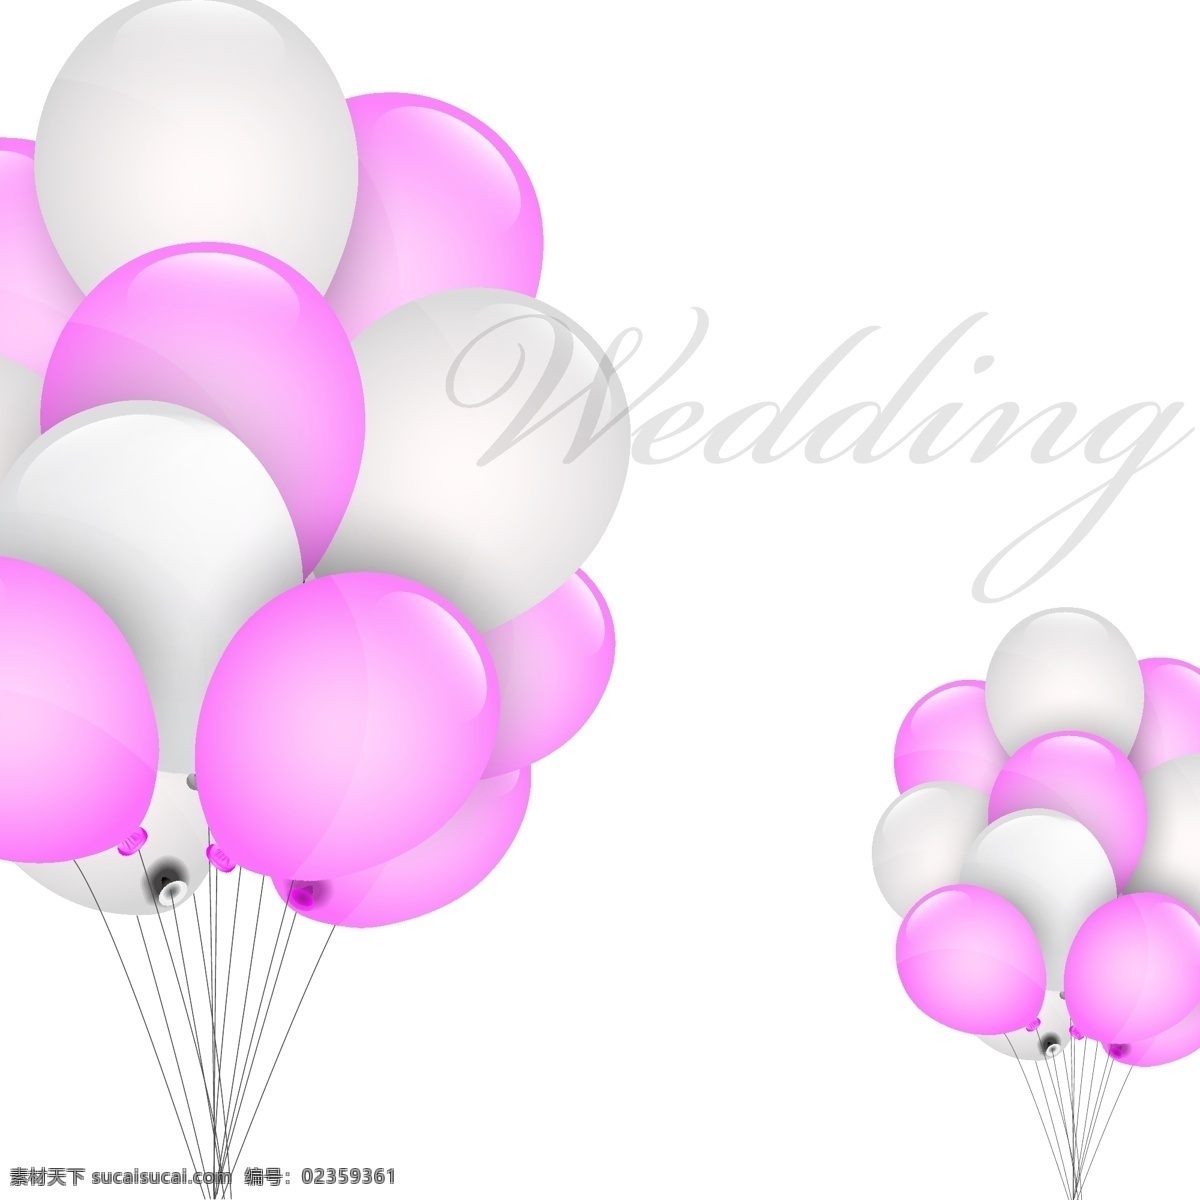 粉红 气球 图案 模板下载 婚礼主题 节日气球 时尚背景 背景图案 底纹背景 底纹边框 矢量素材